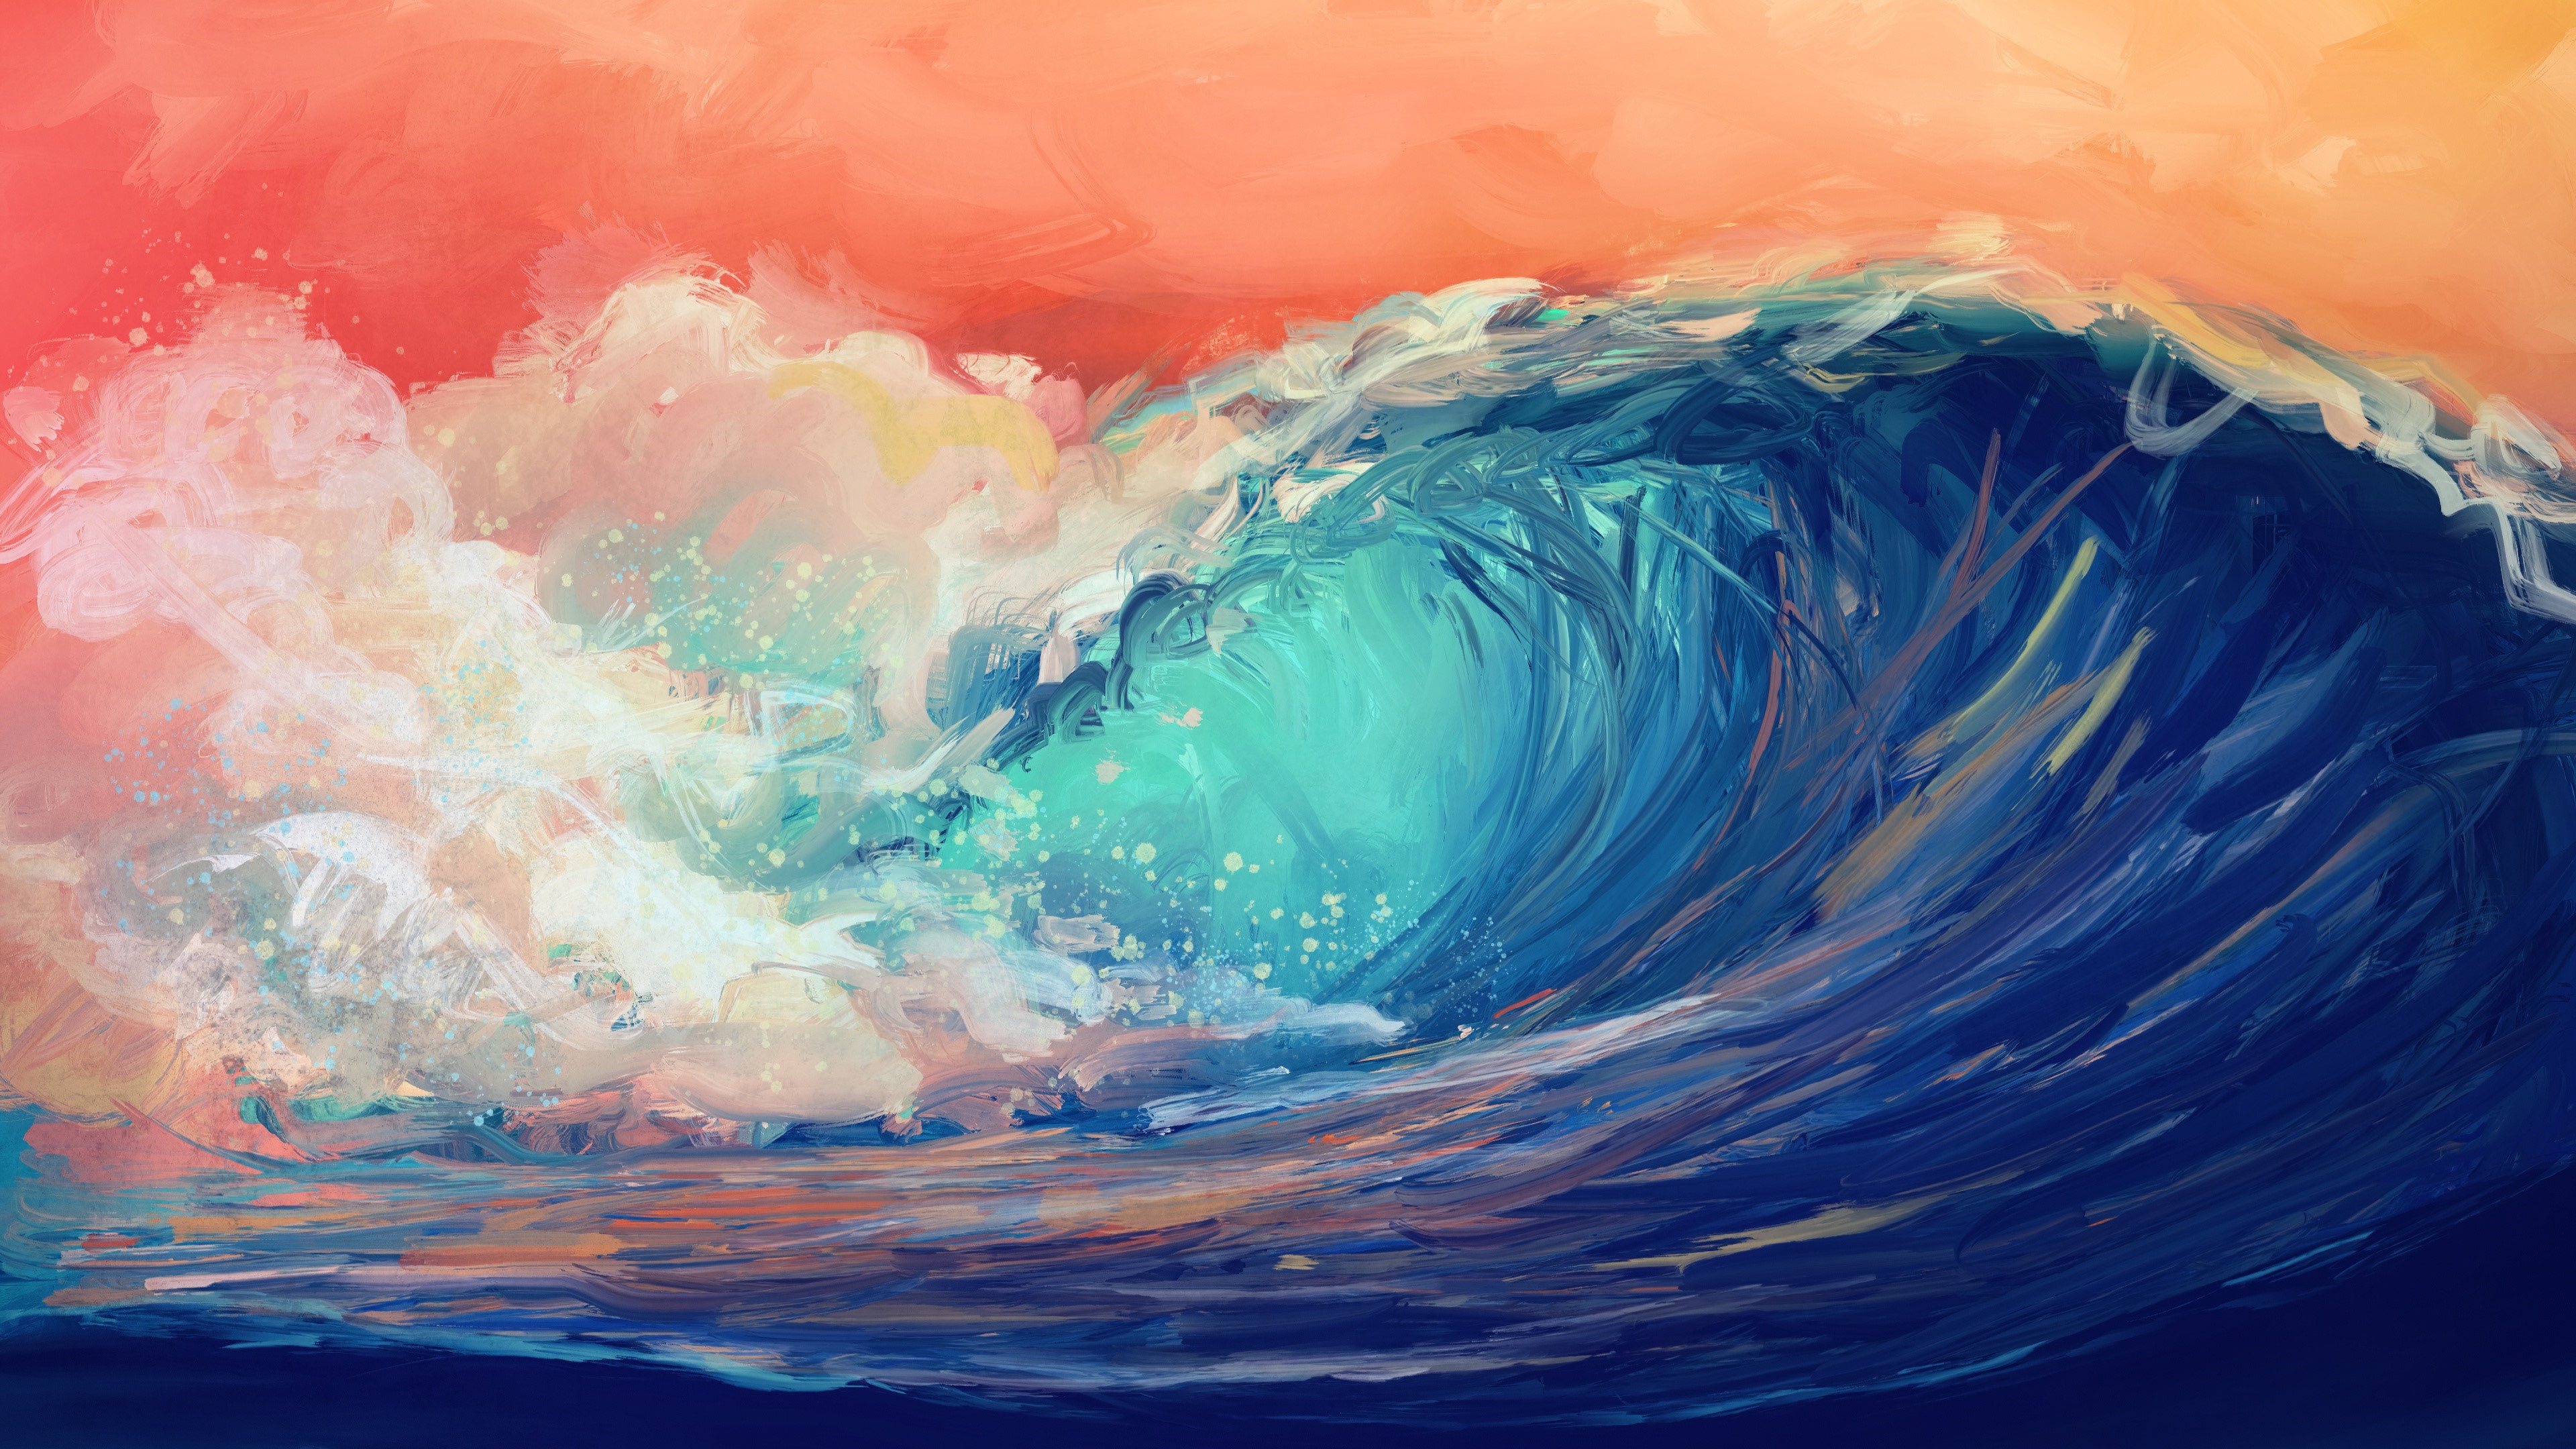 K waves sea painting art